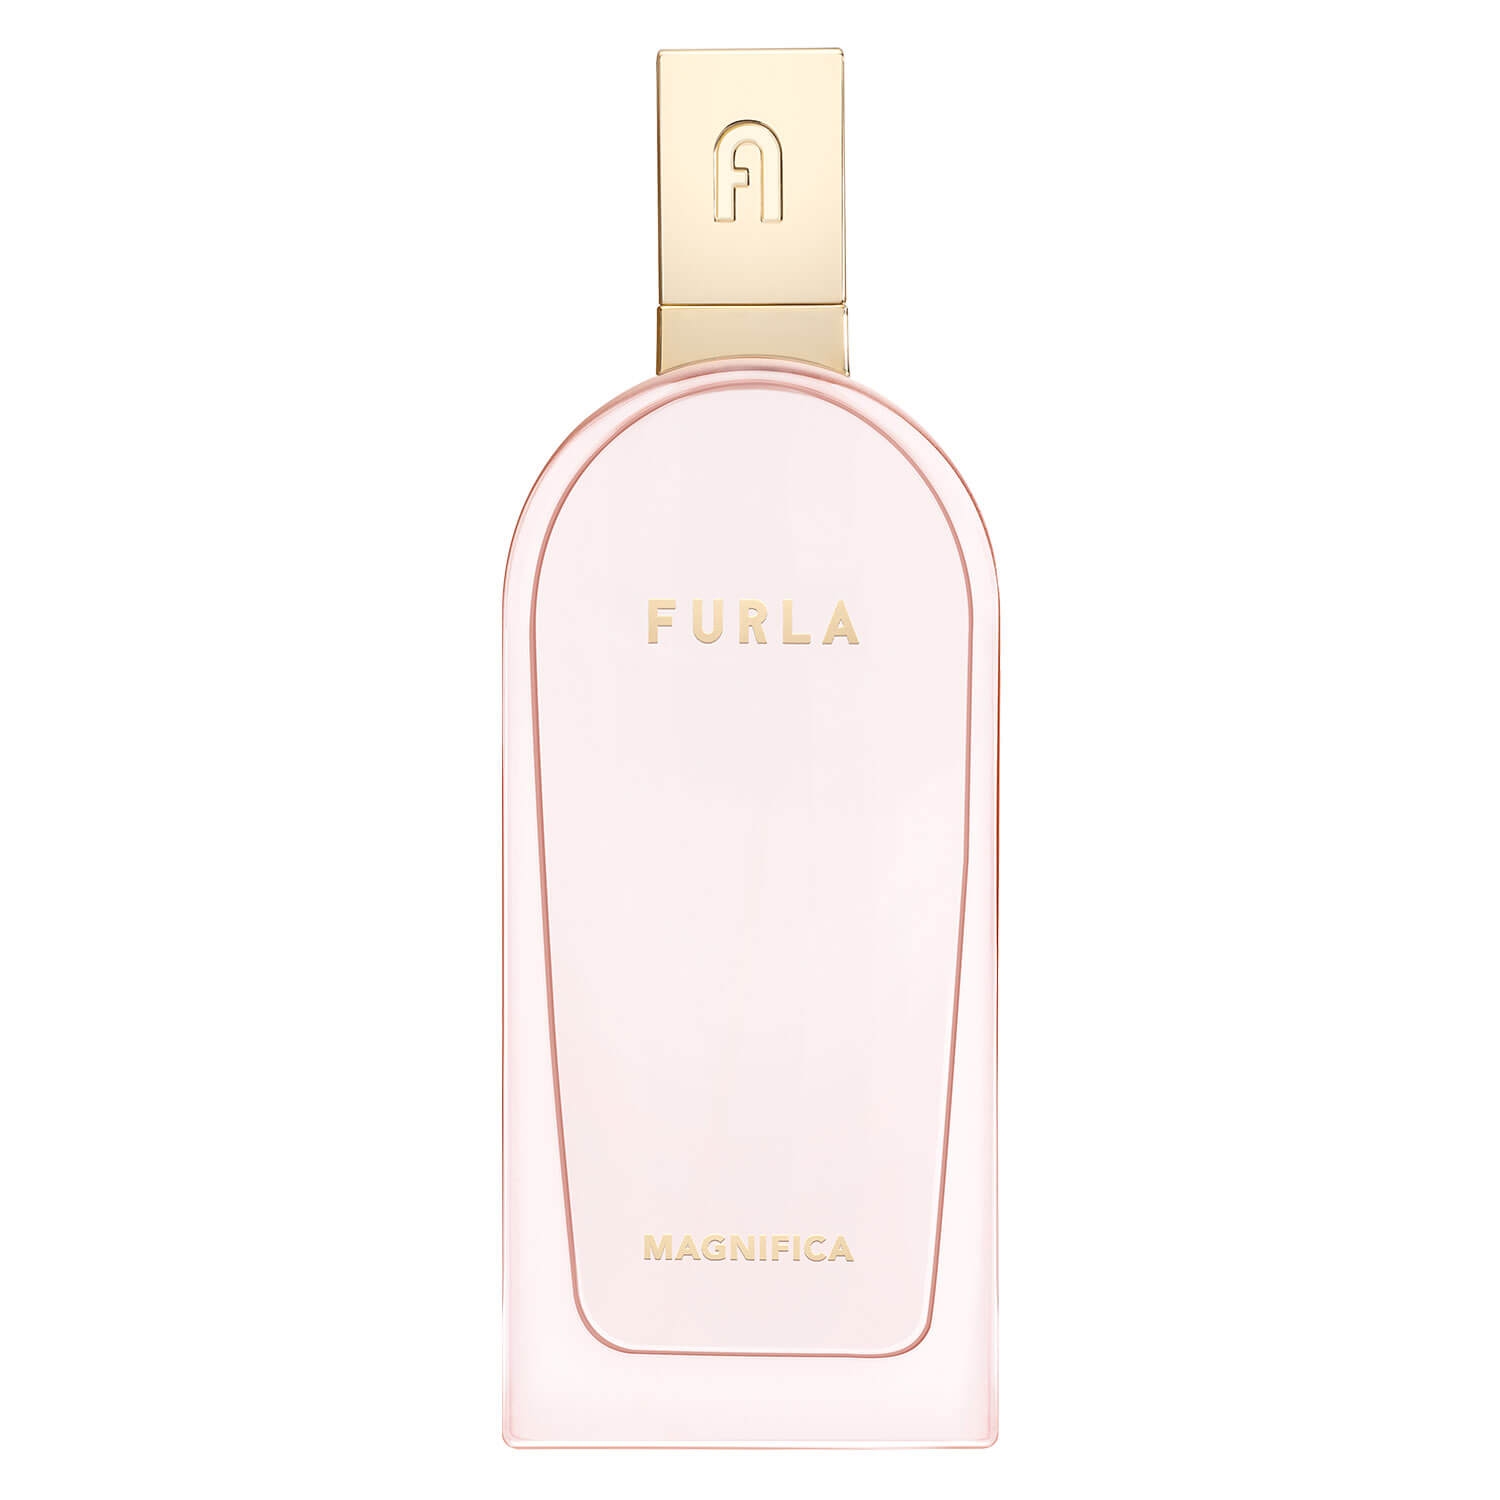 Produktbild von FURLA - Magnifica Eau de Parfum